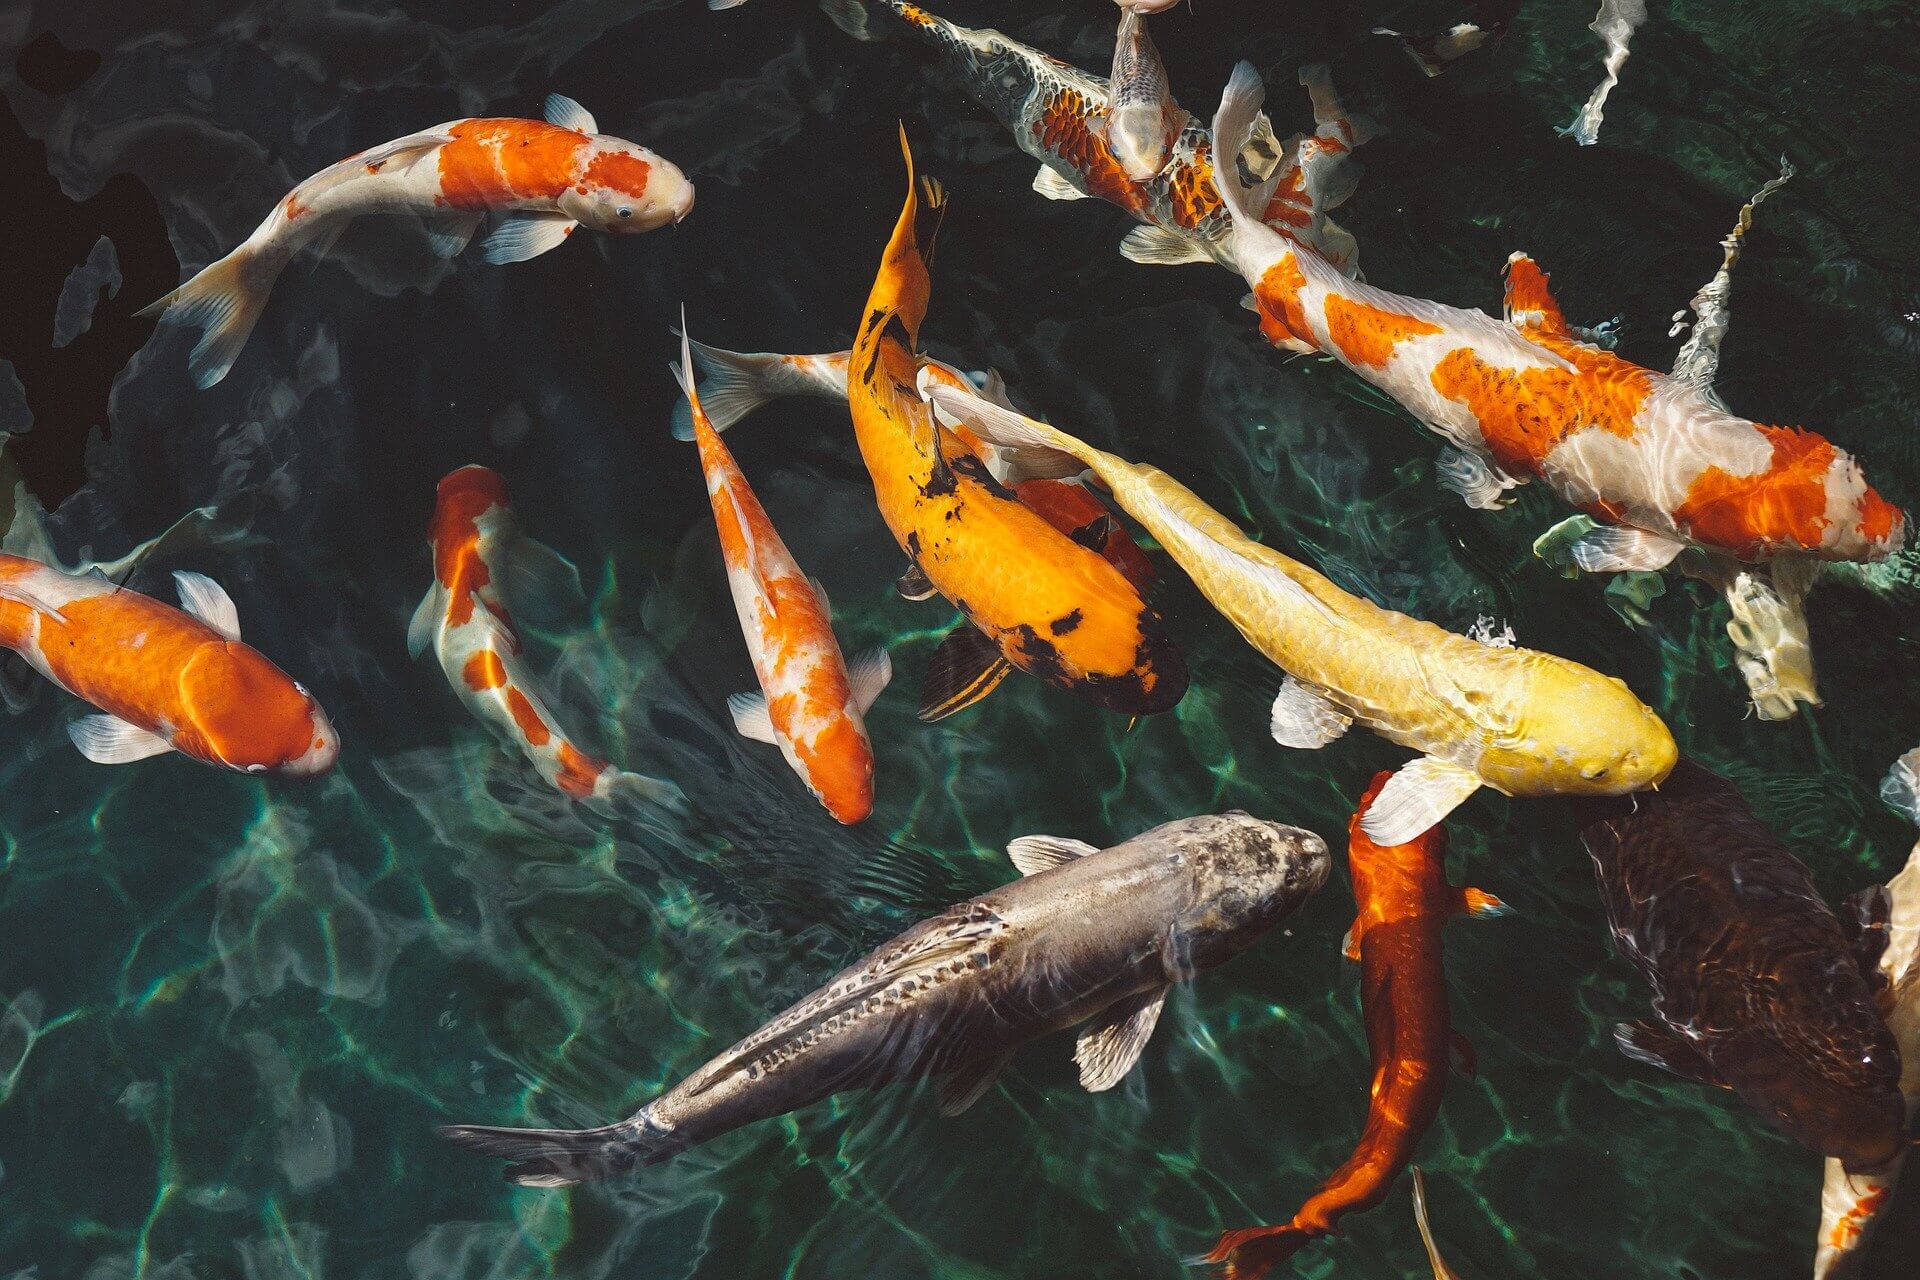   6 Cara Memelihara Ikan  Koi dan Jenis Jenisnya yang Populer